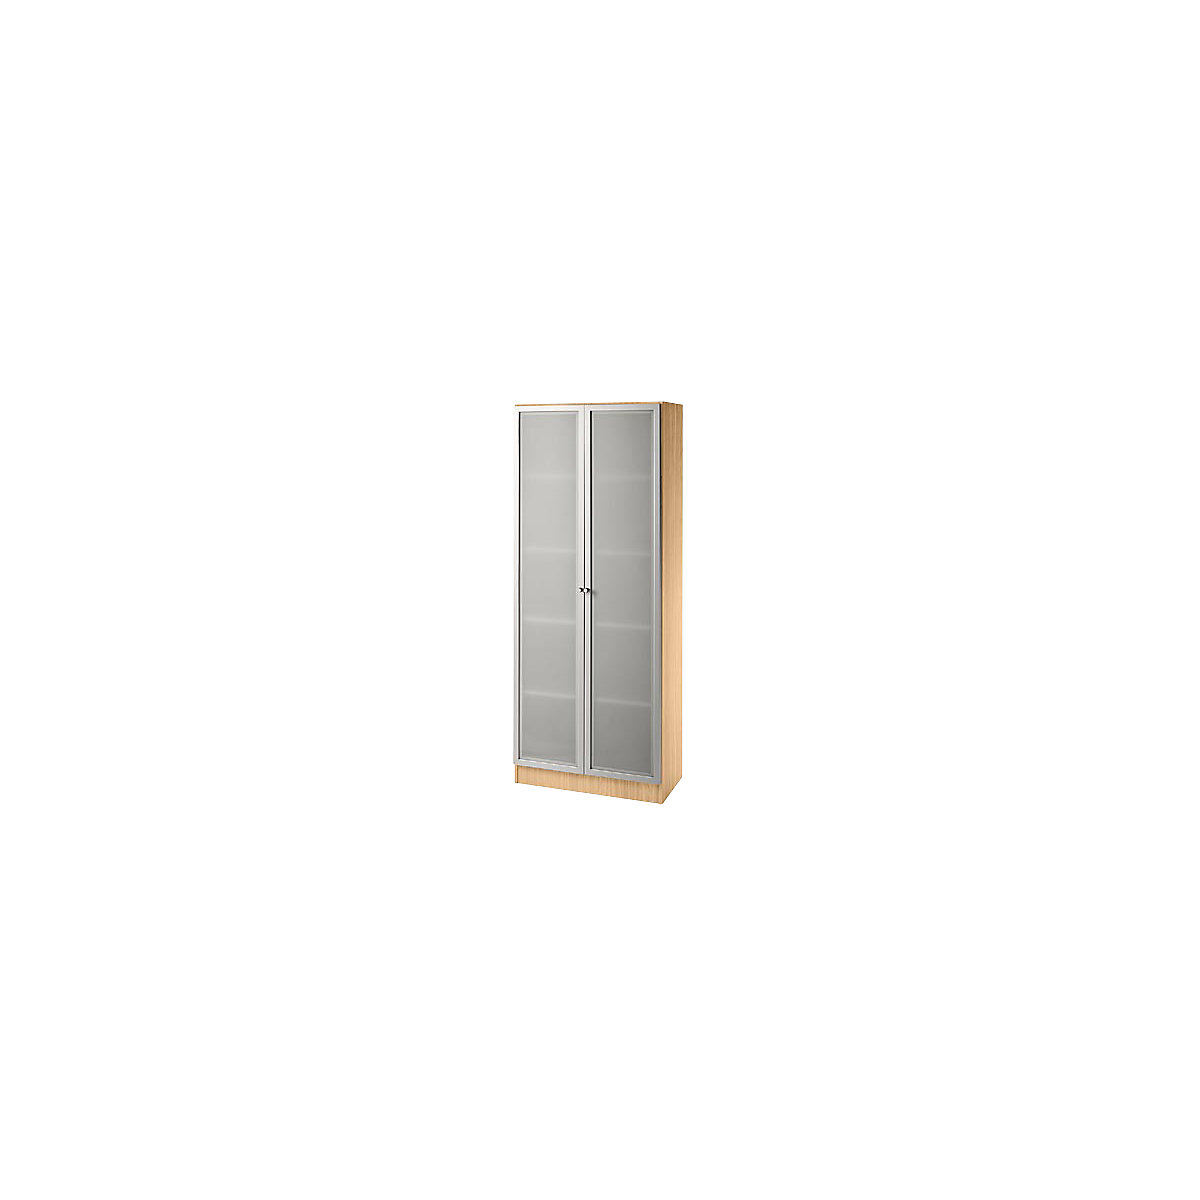 FINO Glastürenschrank, 4 Fachböden, BxT 800 x 420 mm, Buche-Dekor